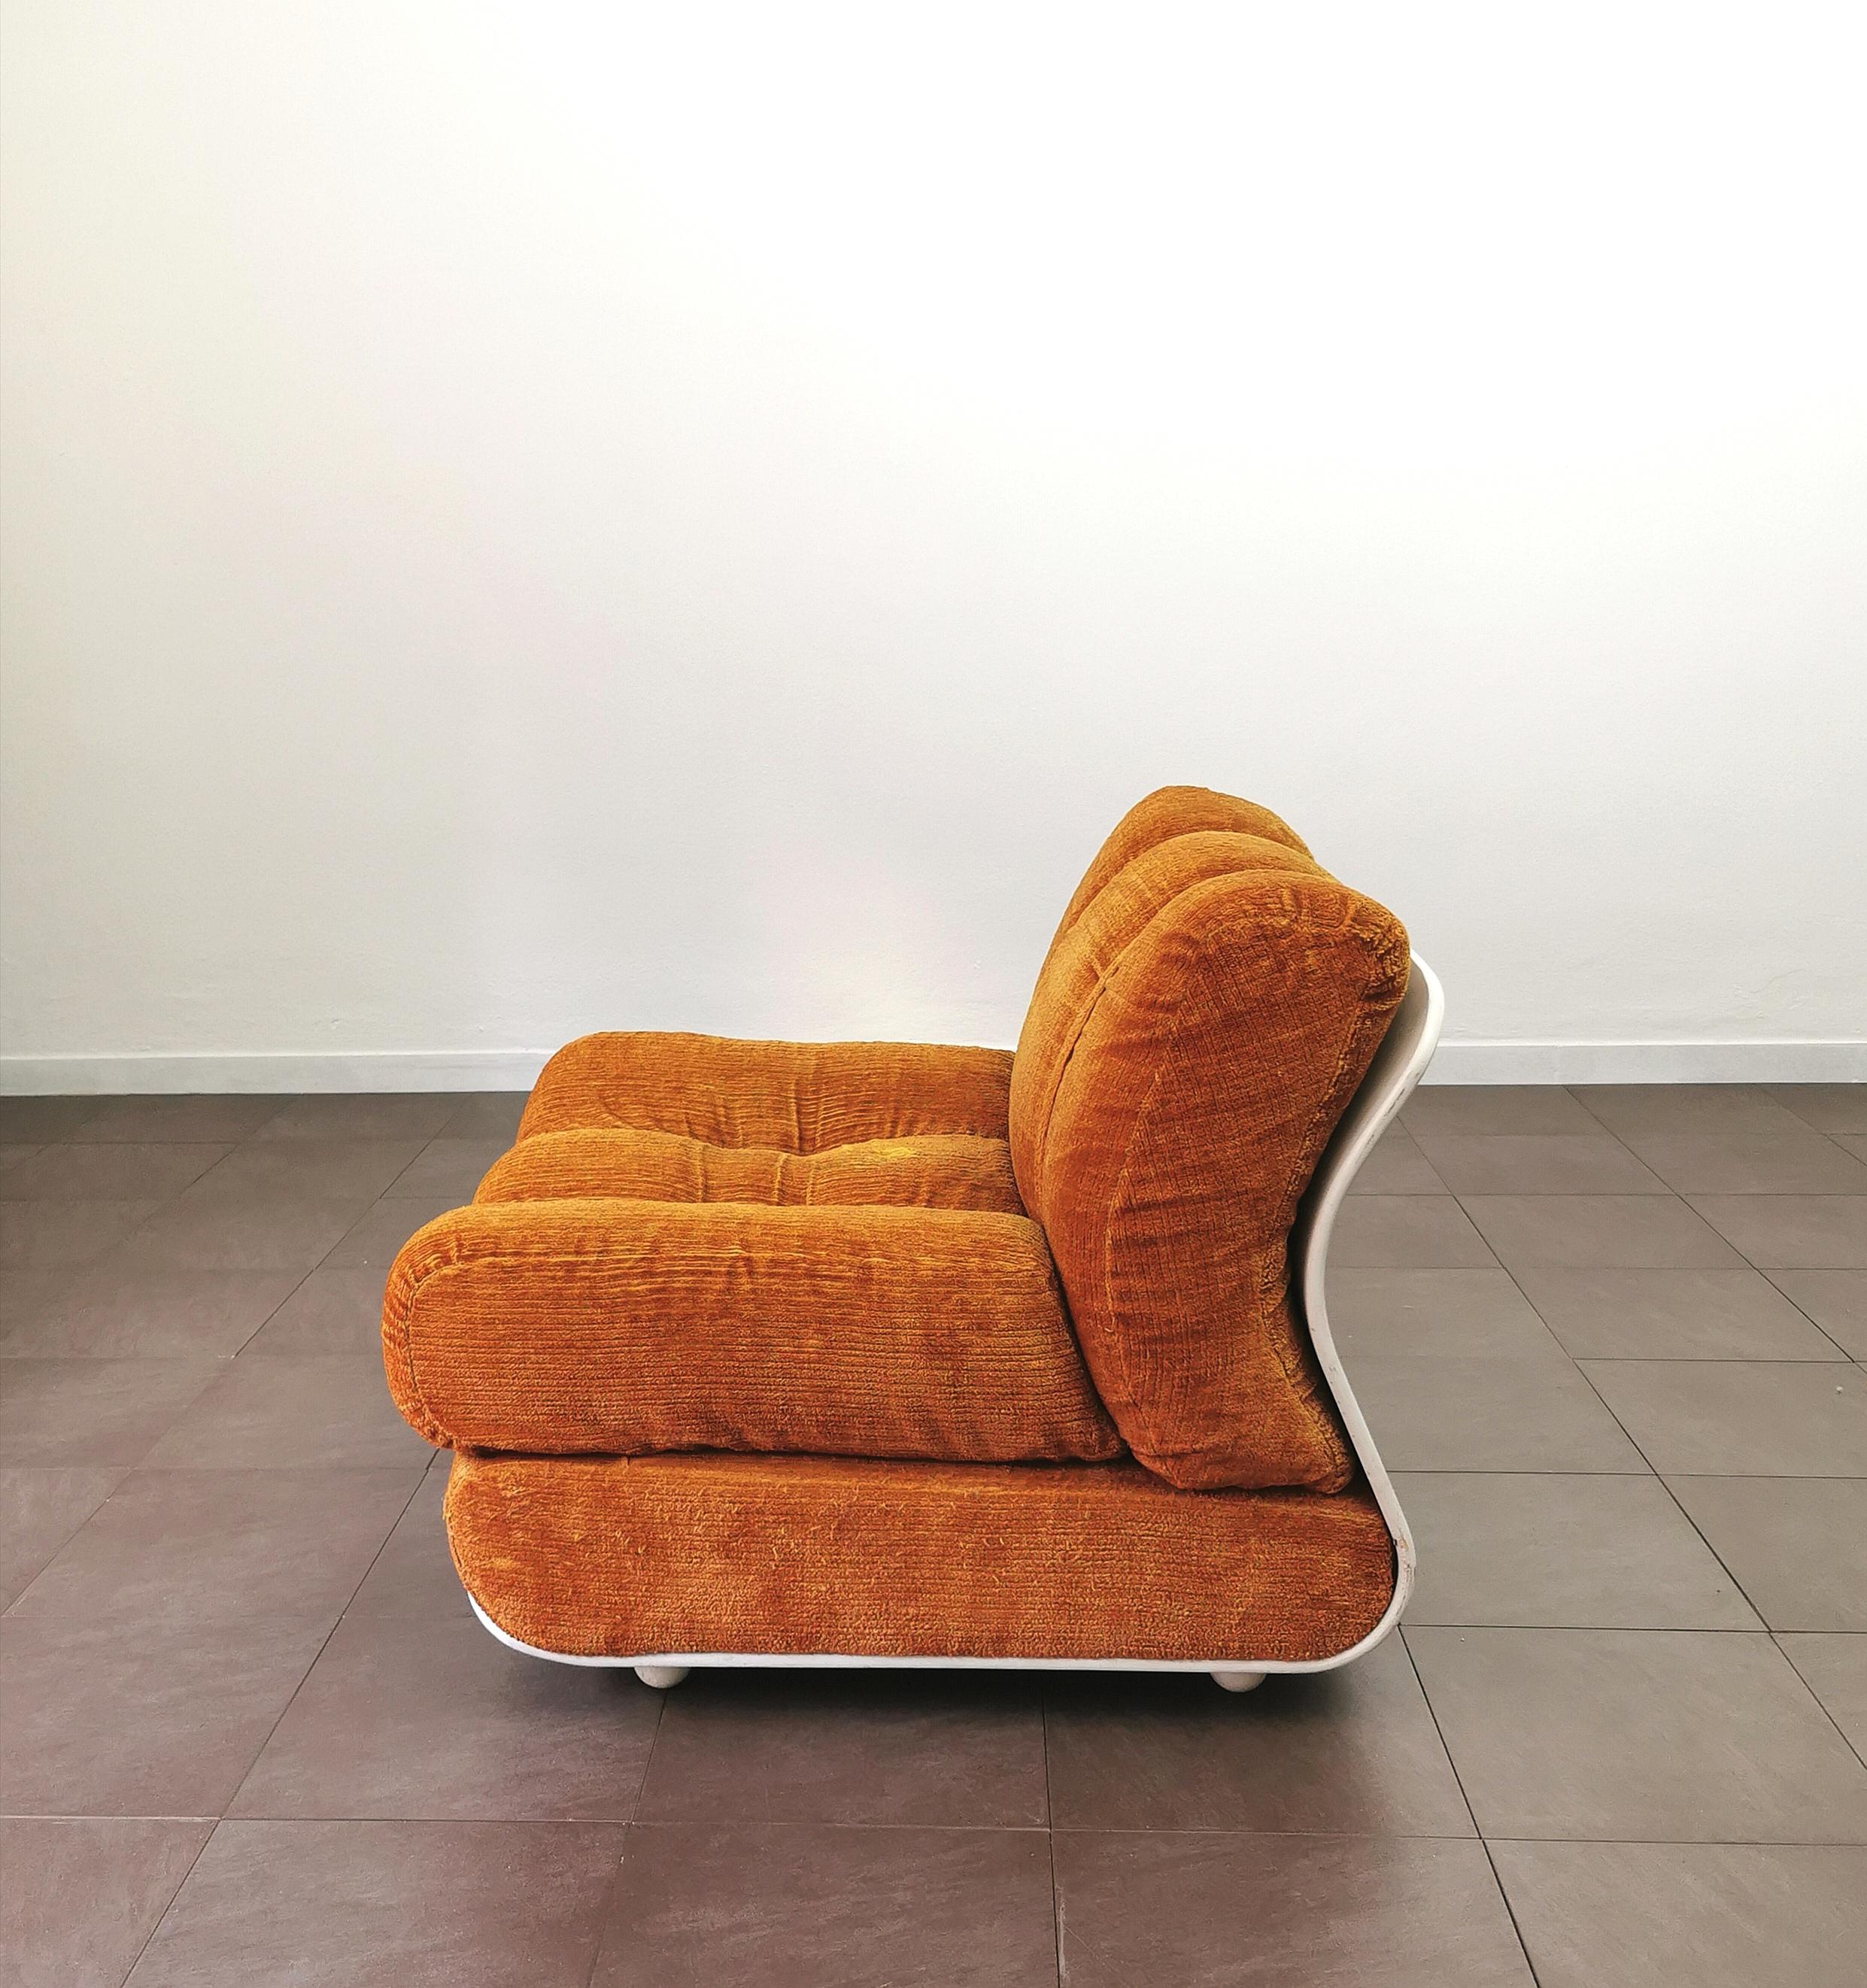 20th Century Curved Armchair Velvet Wood Enameled White Orange Midcentury Italian Design 1970